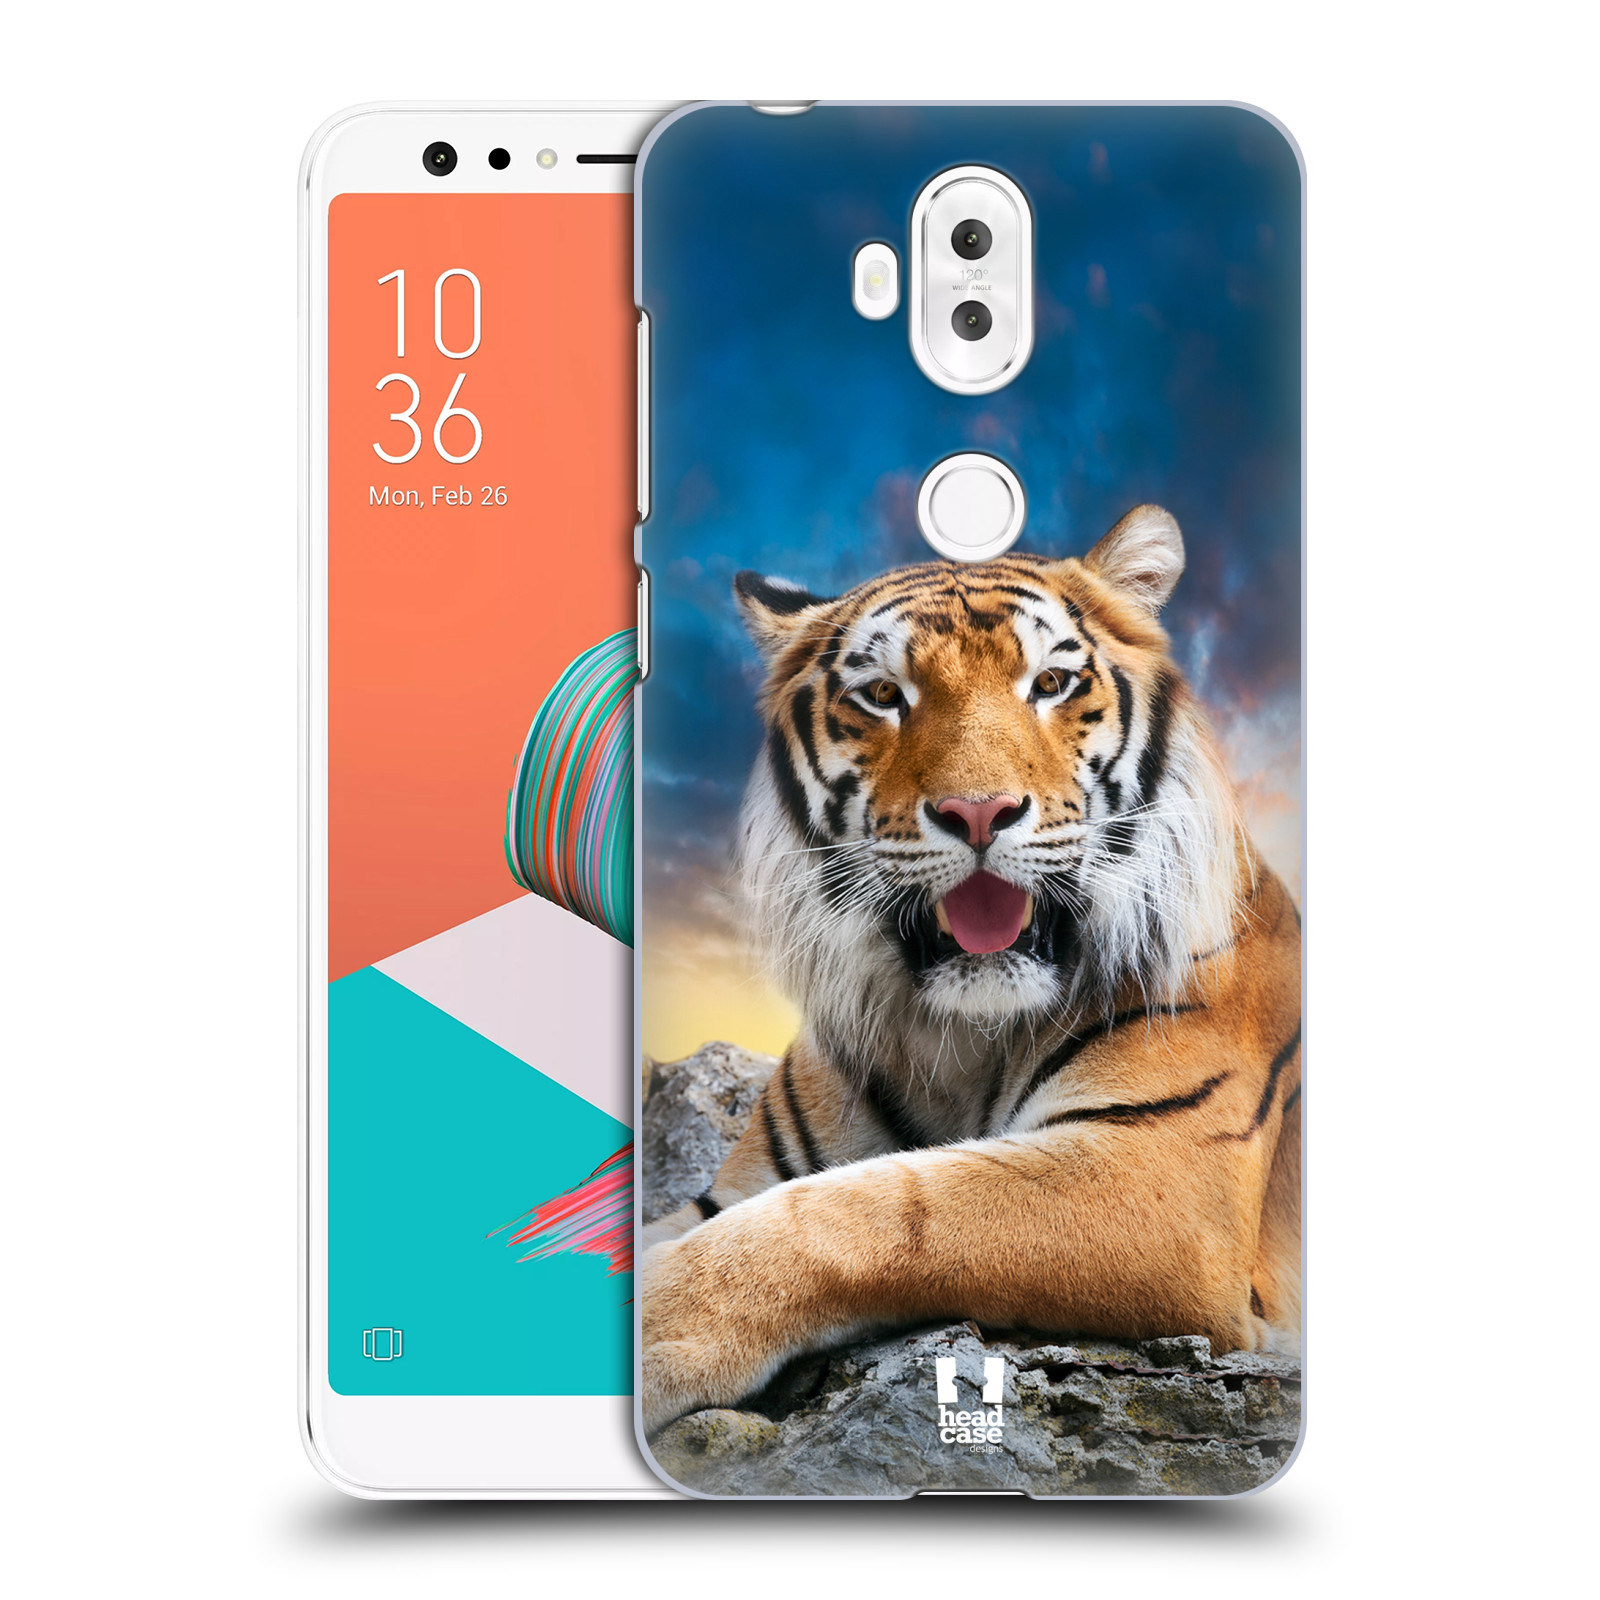  HEAD CASE plastový obal na mobil Asus Zenfone 5 LITE ZC600KL vzor Divočina, Divoký život a zvířata foto TYGR A NEBE